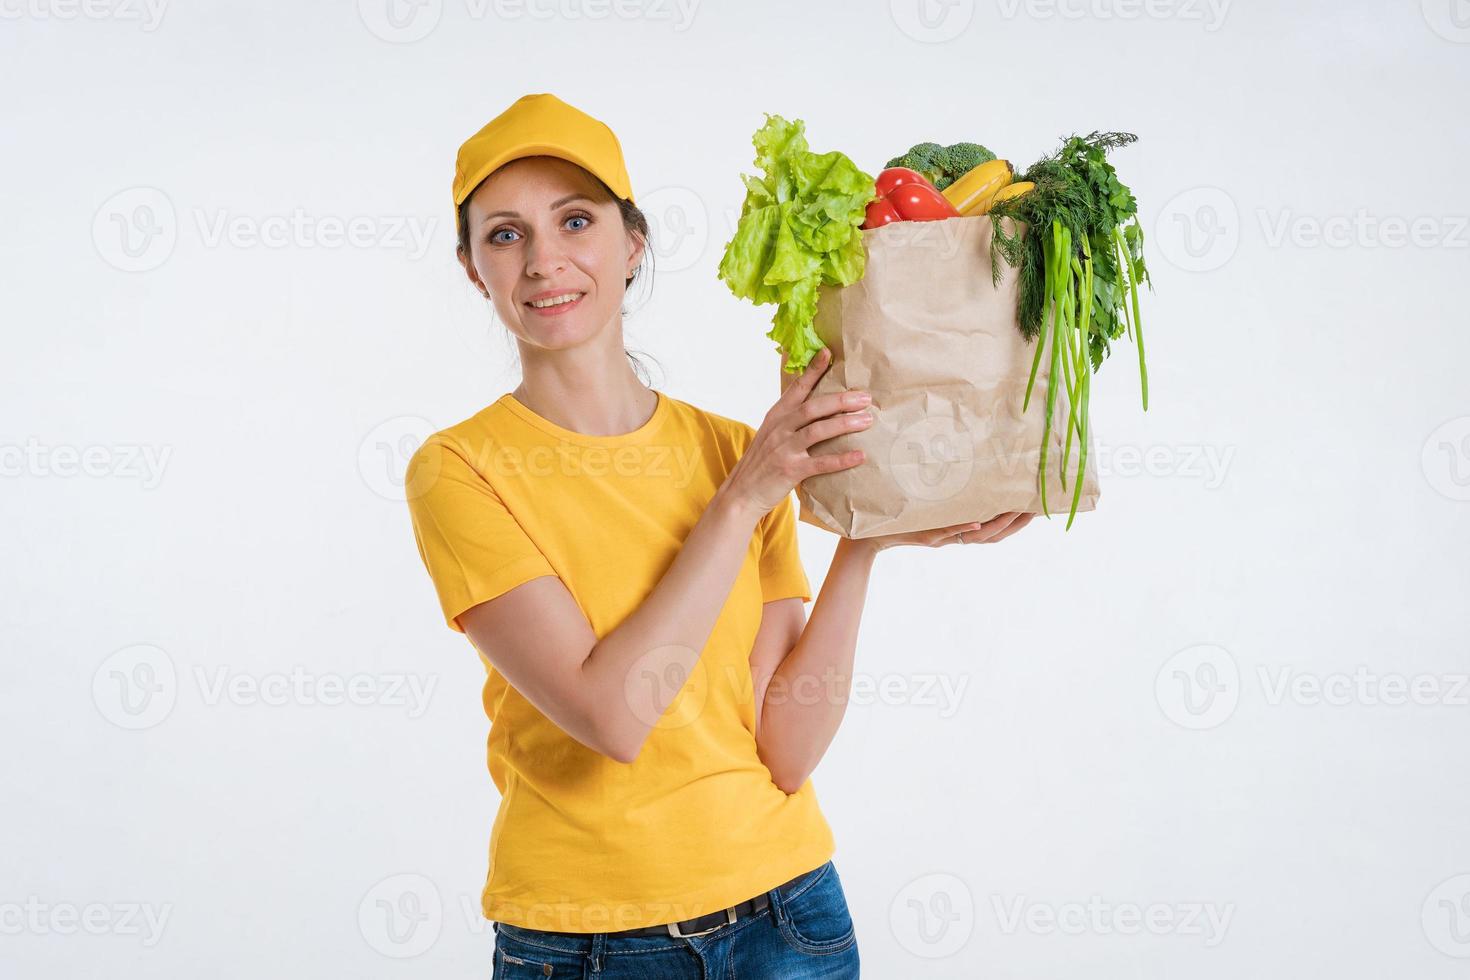 trabajadora de entrega de alimentos con paquete de alimentos foto